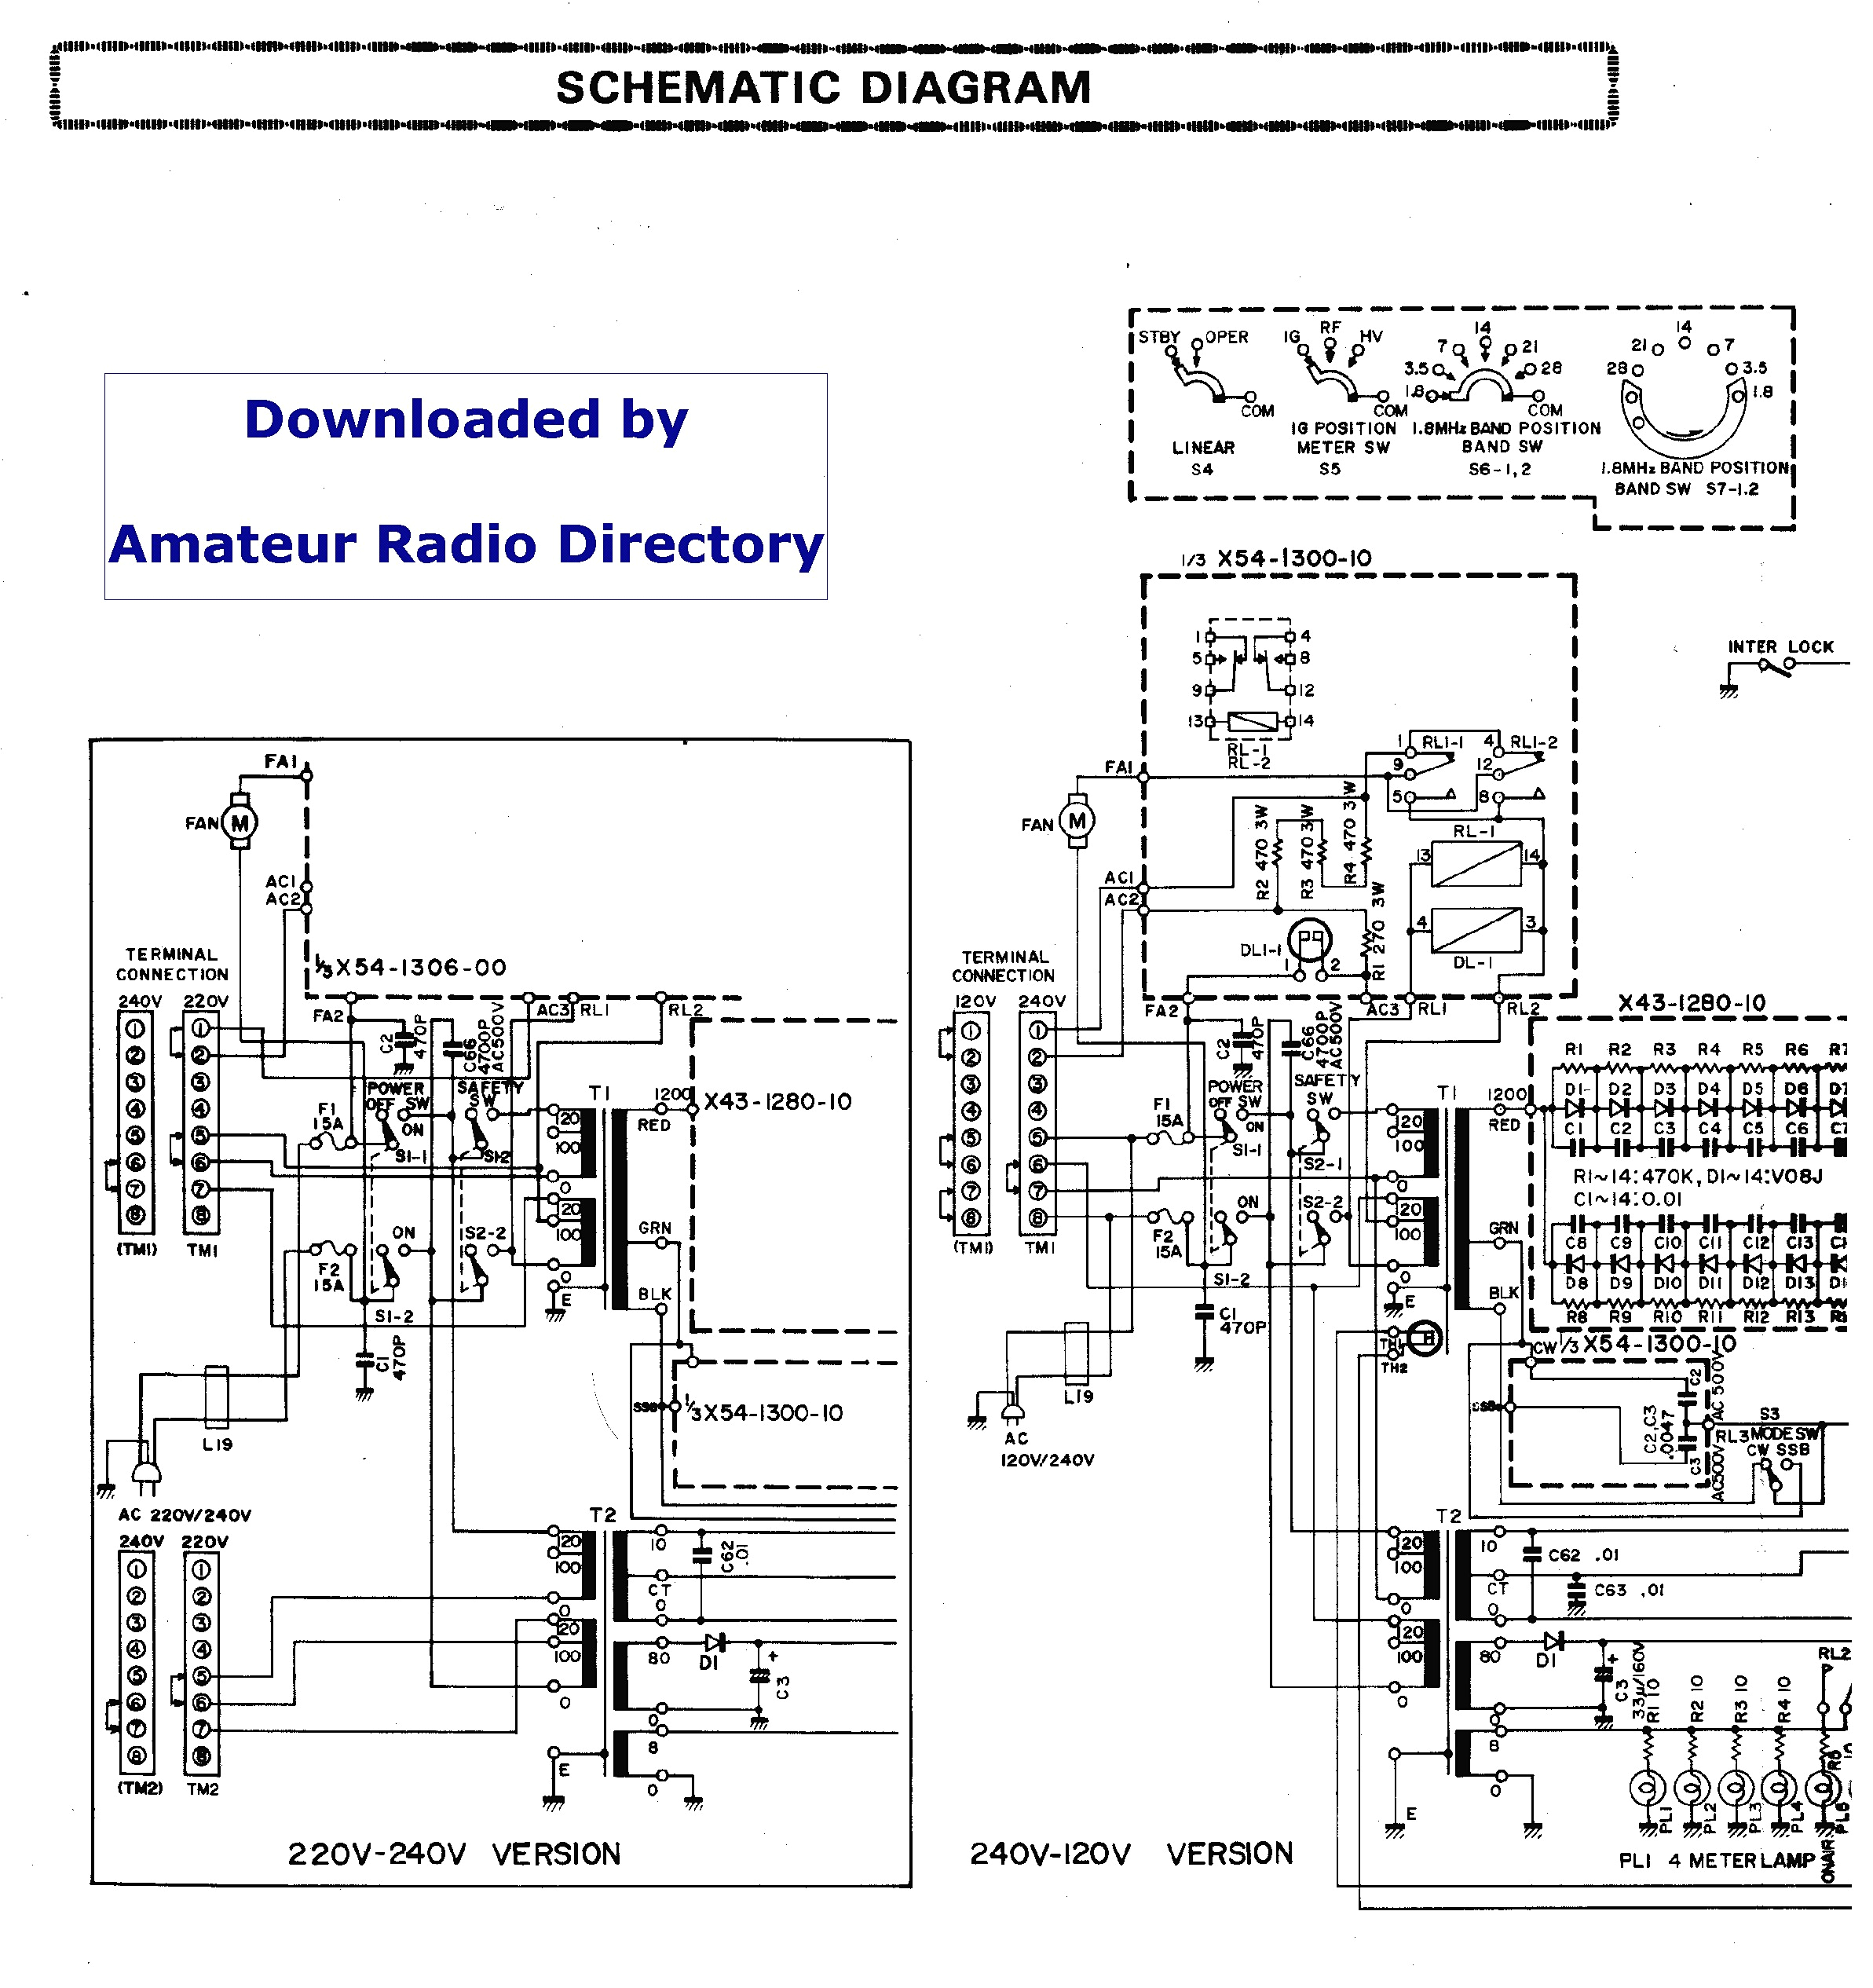 wiring model kenwood diagram kdcdishwasher wiring diagram sort ddc wiring diagram kenwood model wiring diagram sheet